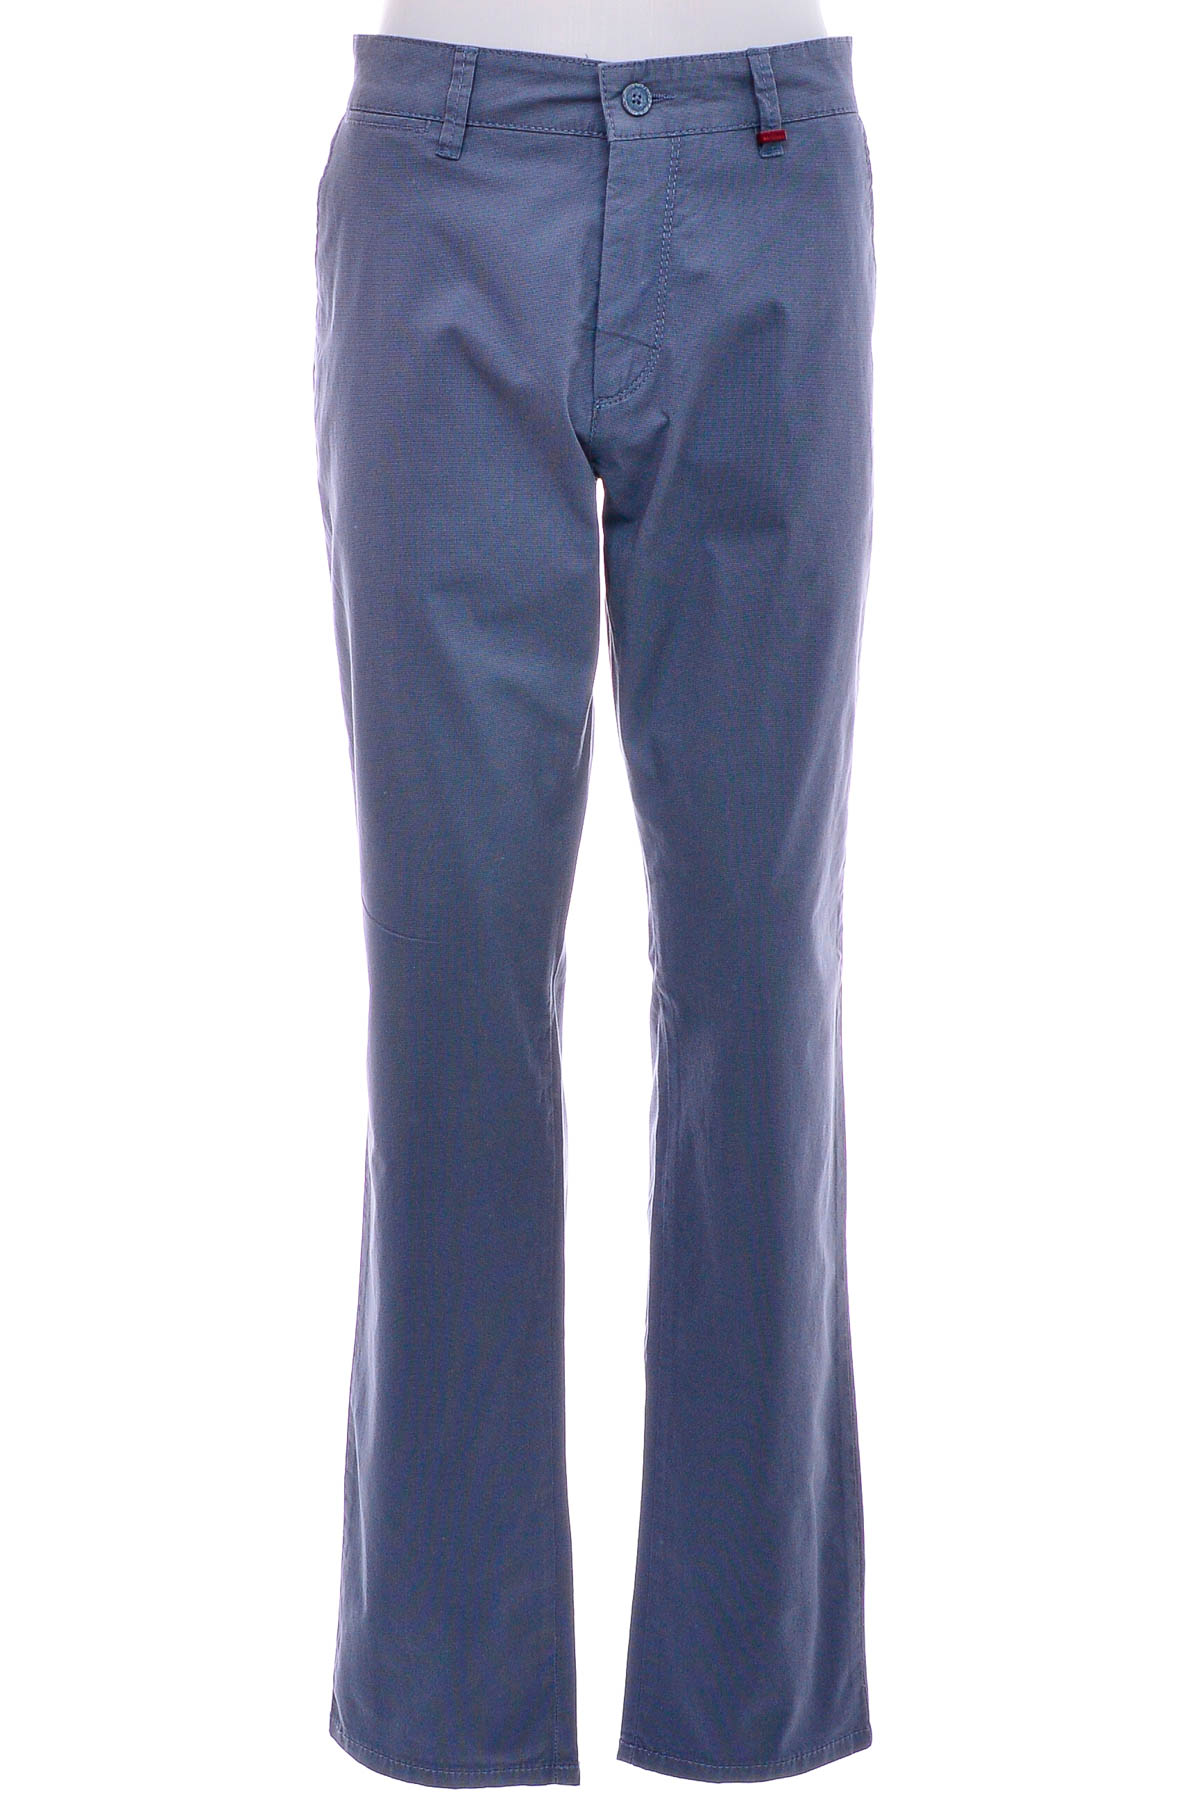 Ανδρικά παντελόνια - MAC Jeans - 0